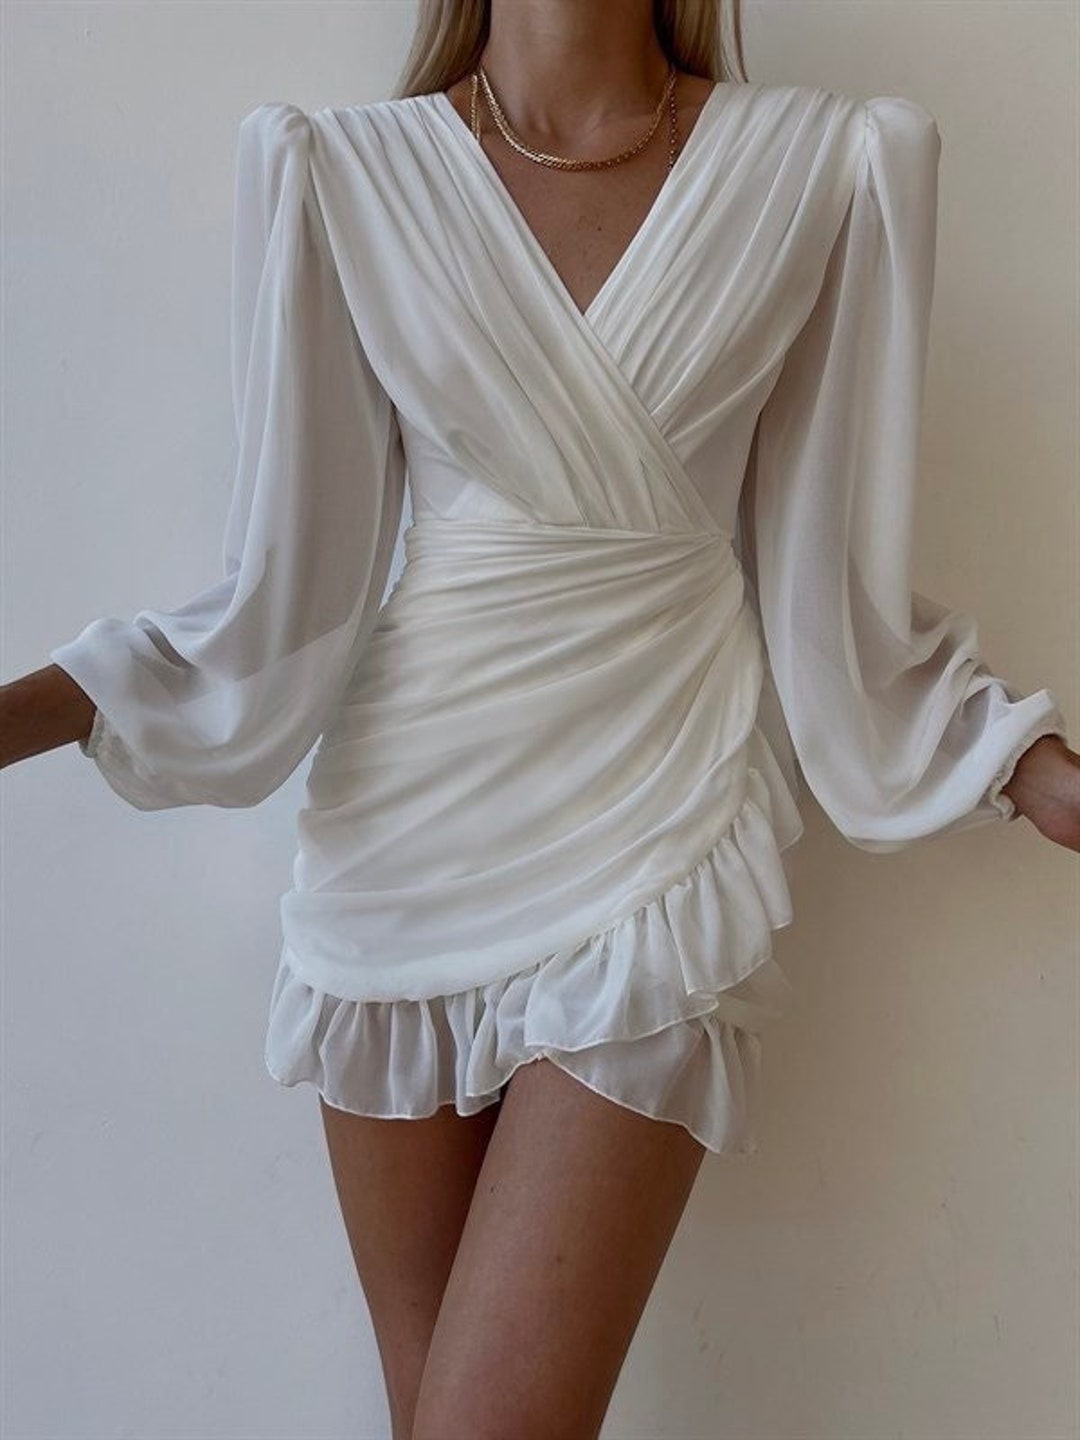 Short White Tulle Dress Engagement Photoshoot Dress Elope - Etsy